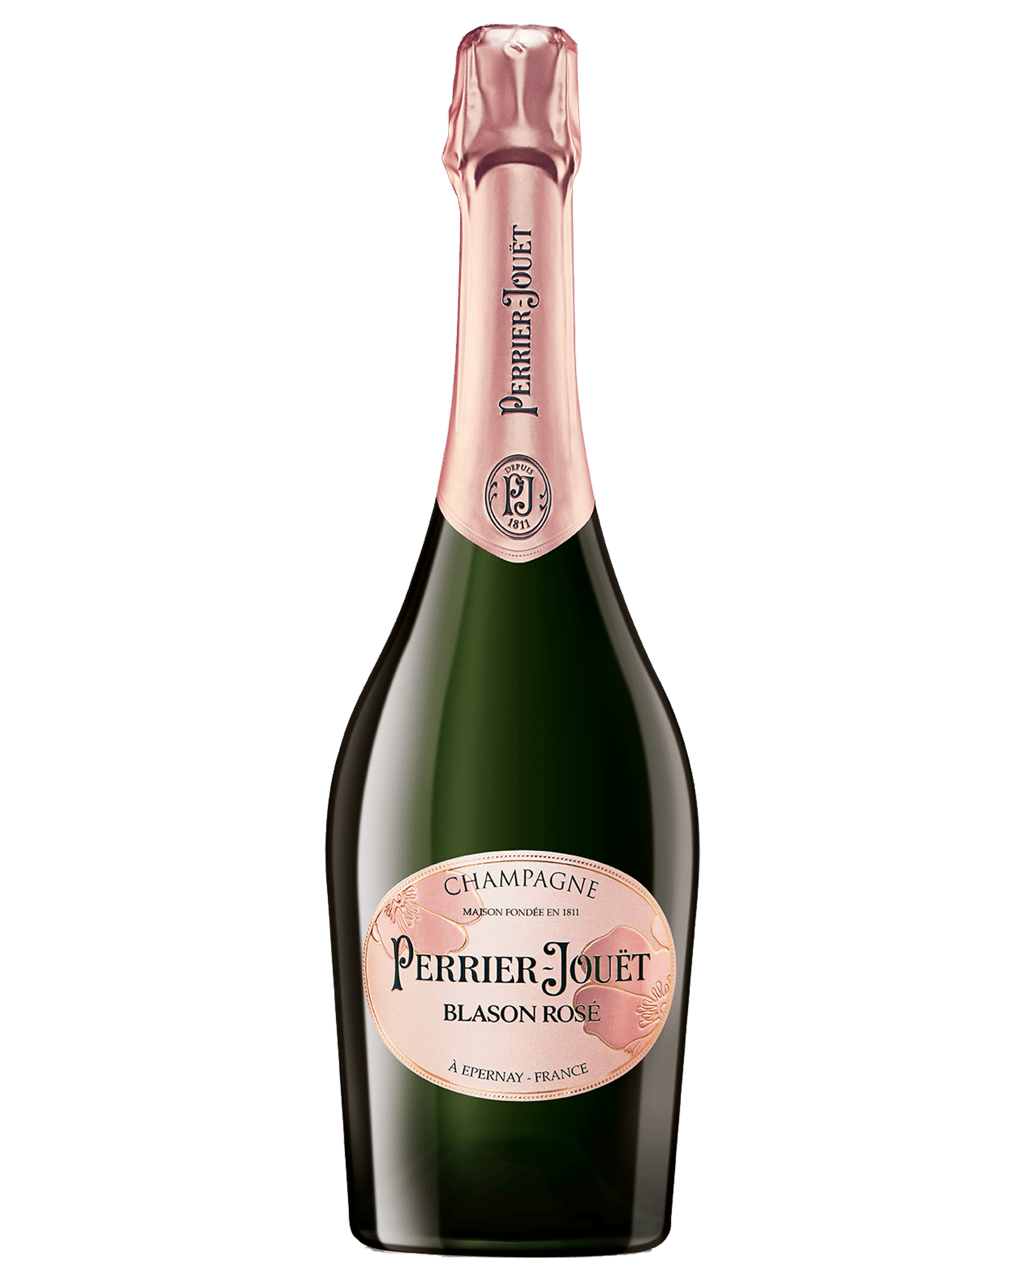 Margaret rose champagne